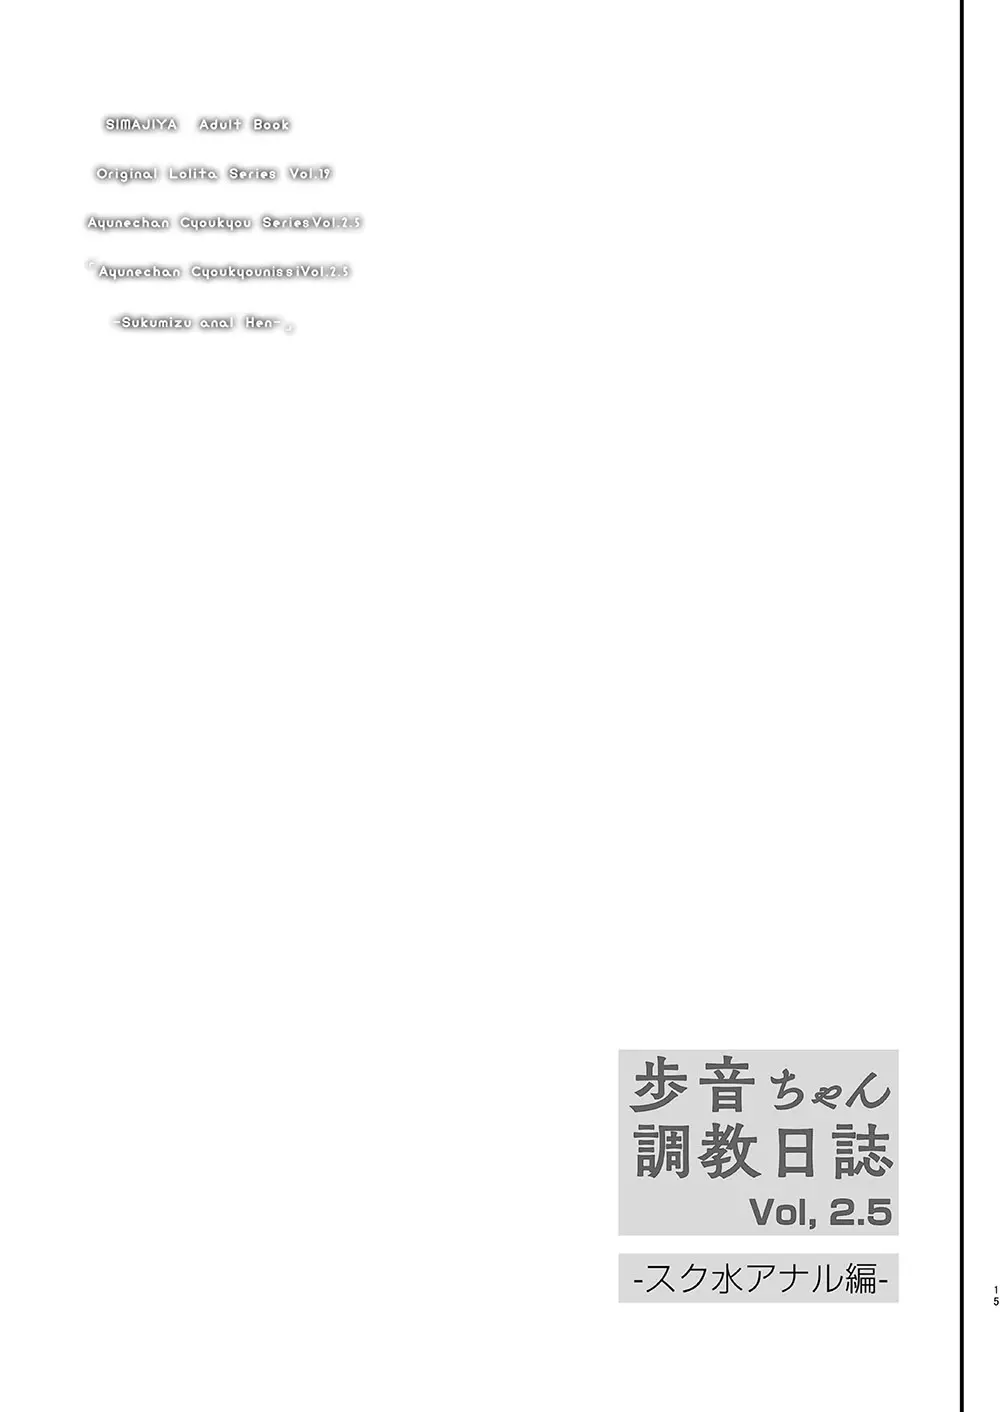 歩音ちゃん 調教日誌 Vol2.5 -スク水アナル編- 16ページ